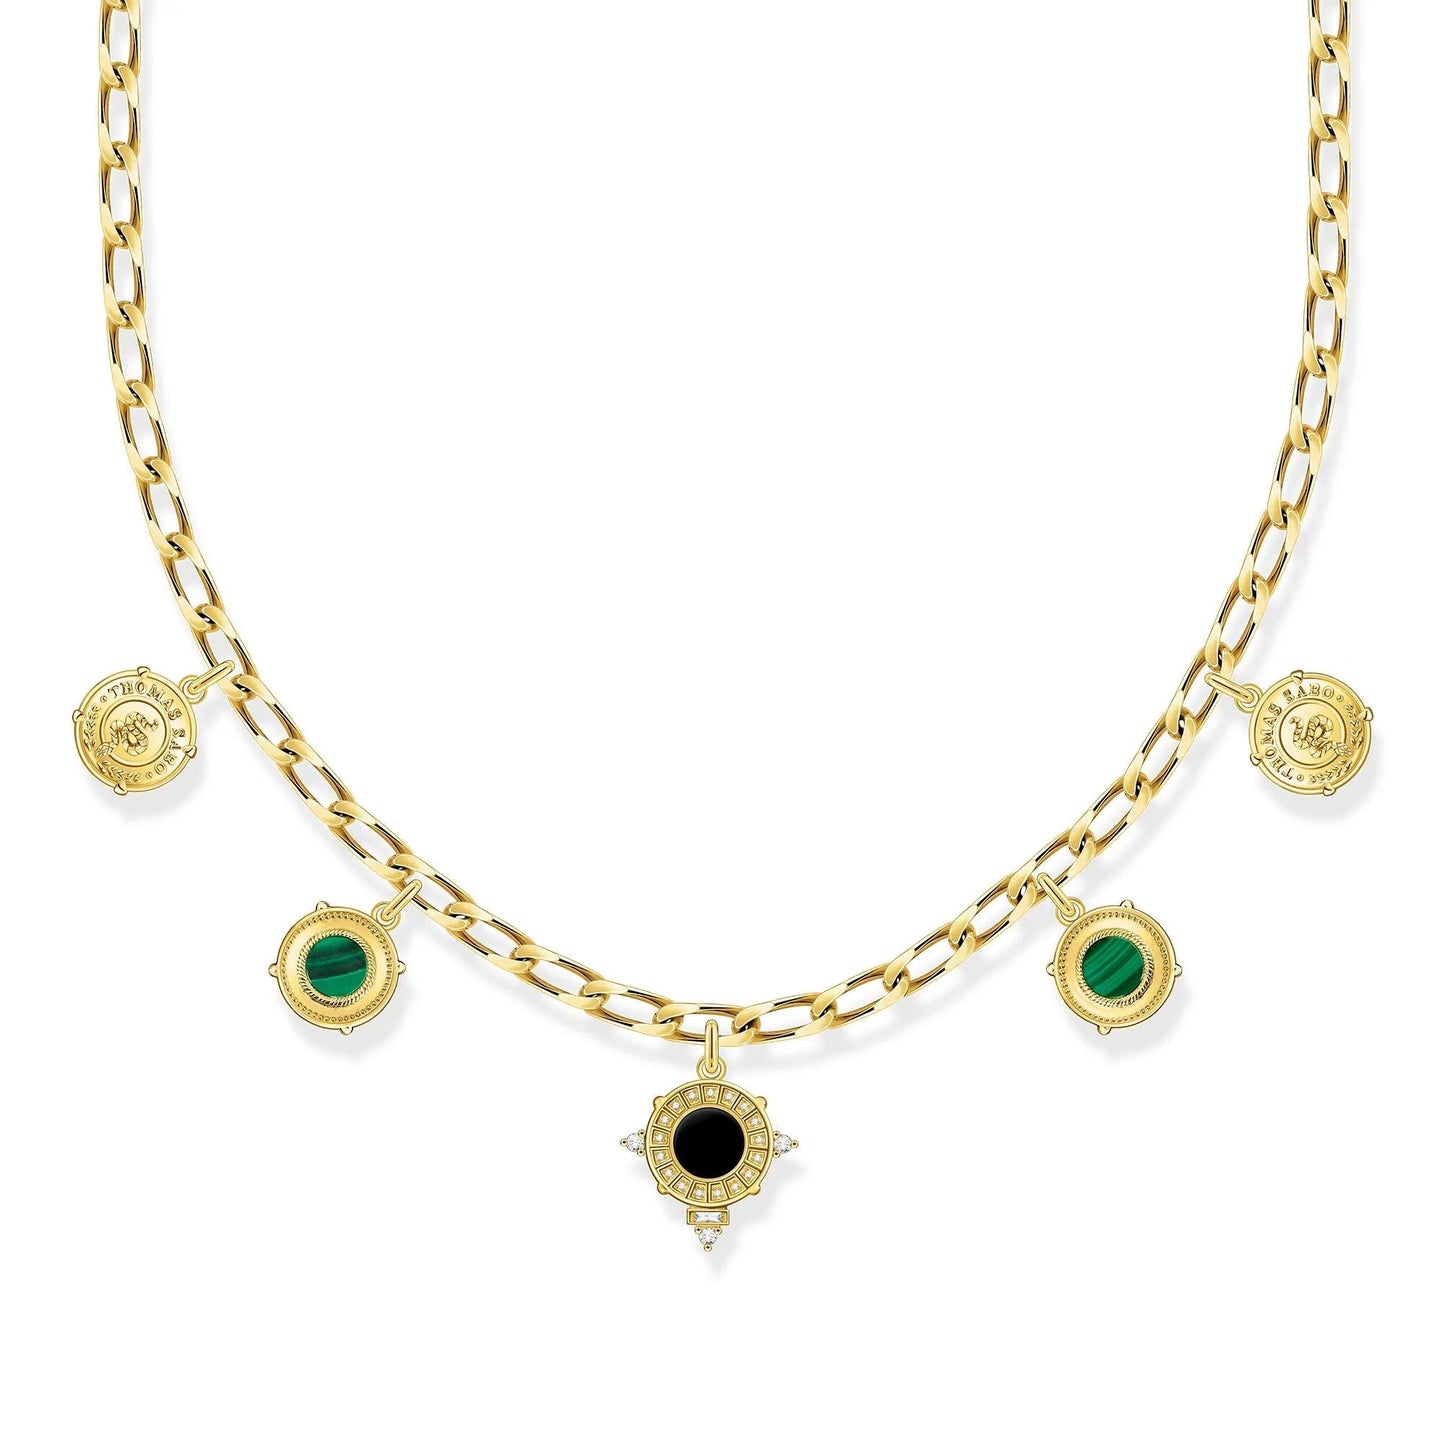 THOMAS SABO Iconic Symbols Gold Necklace